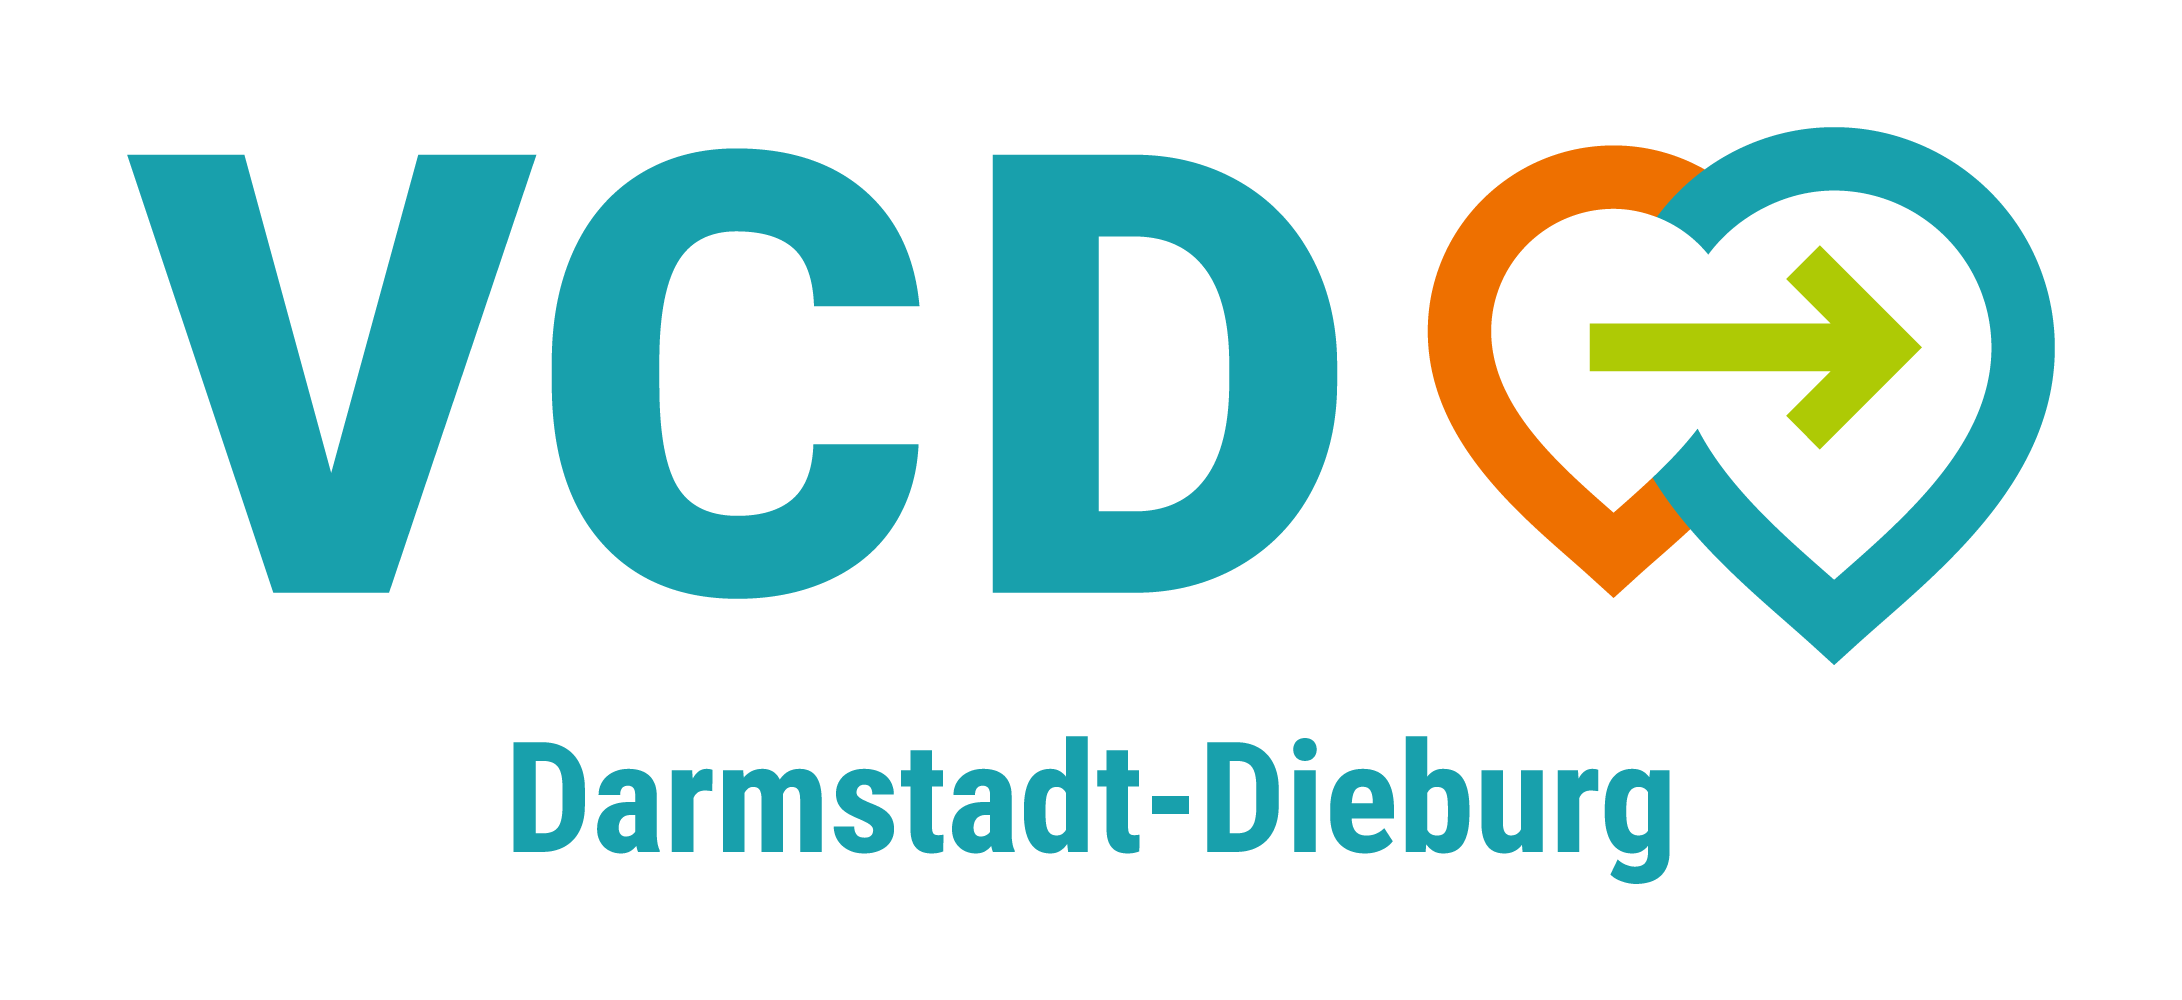 VCD Darmstadt-Dieburg